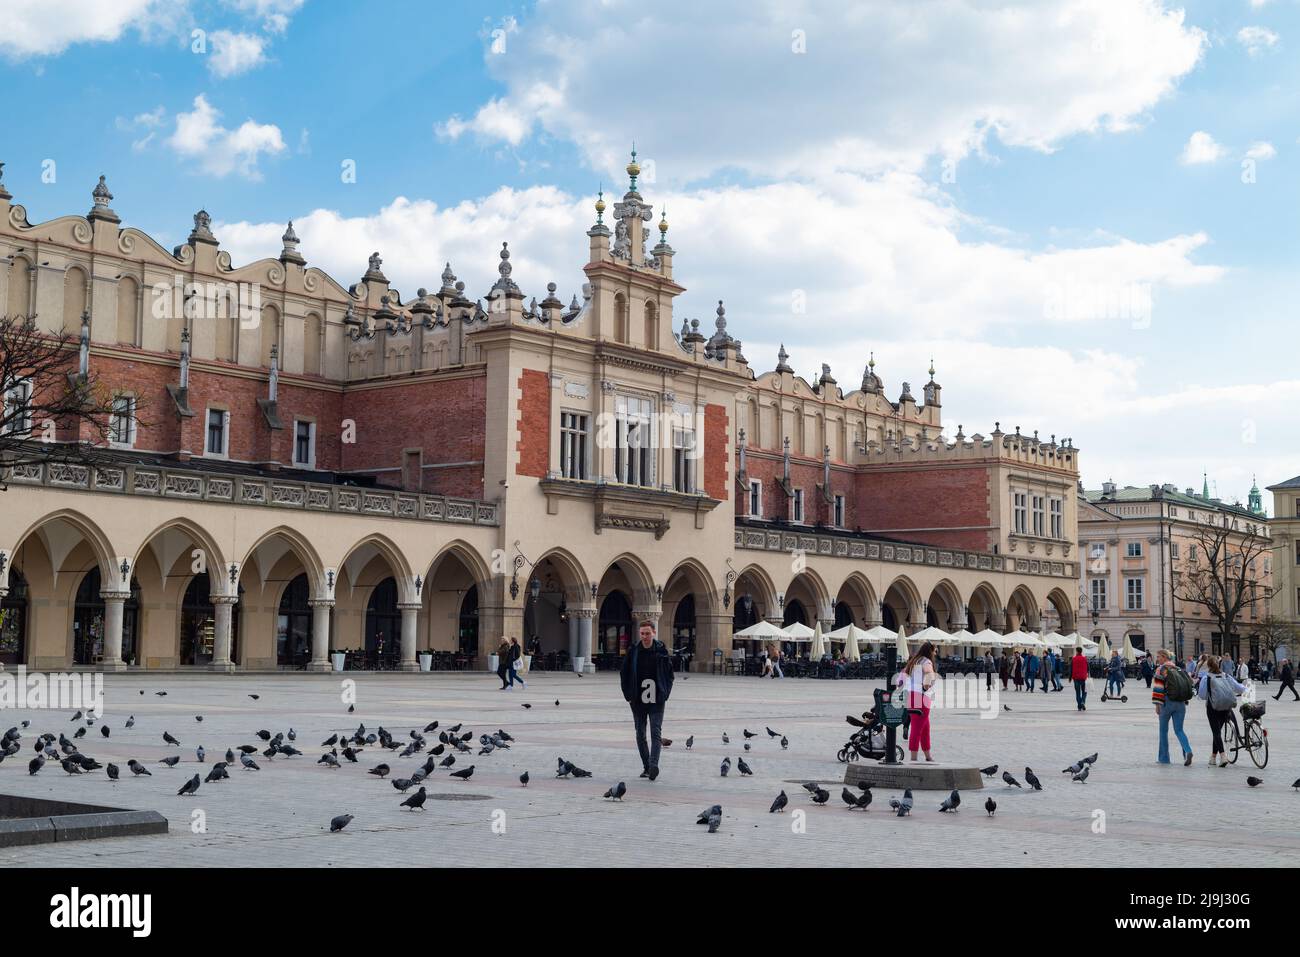 Cracovie, Pologne - rues pittoresques de la vieille ville - 29.04.2022. Kraków Cloth Hall. Patrimoine mondial de l'UNESCO Banque D'Images